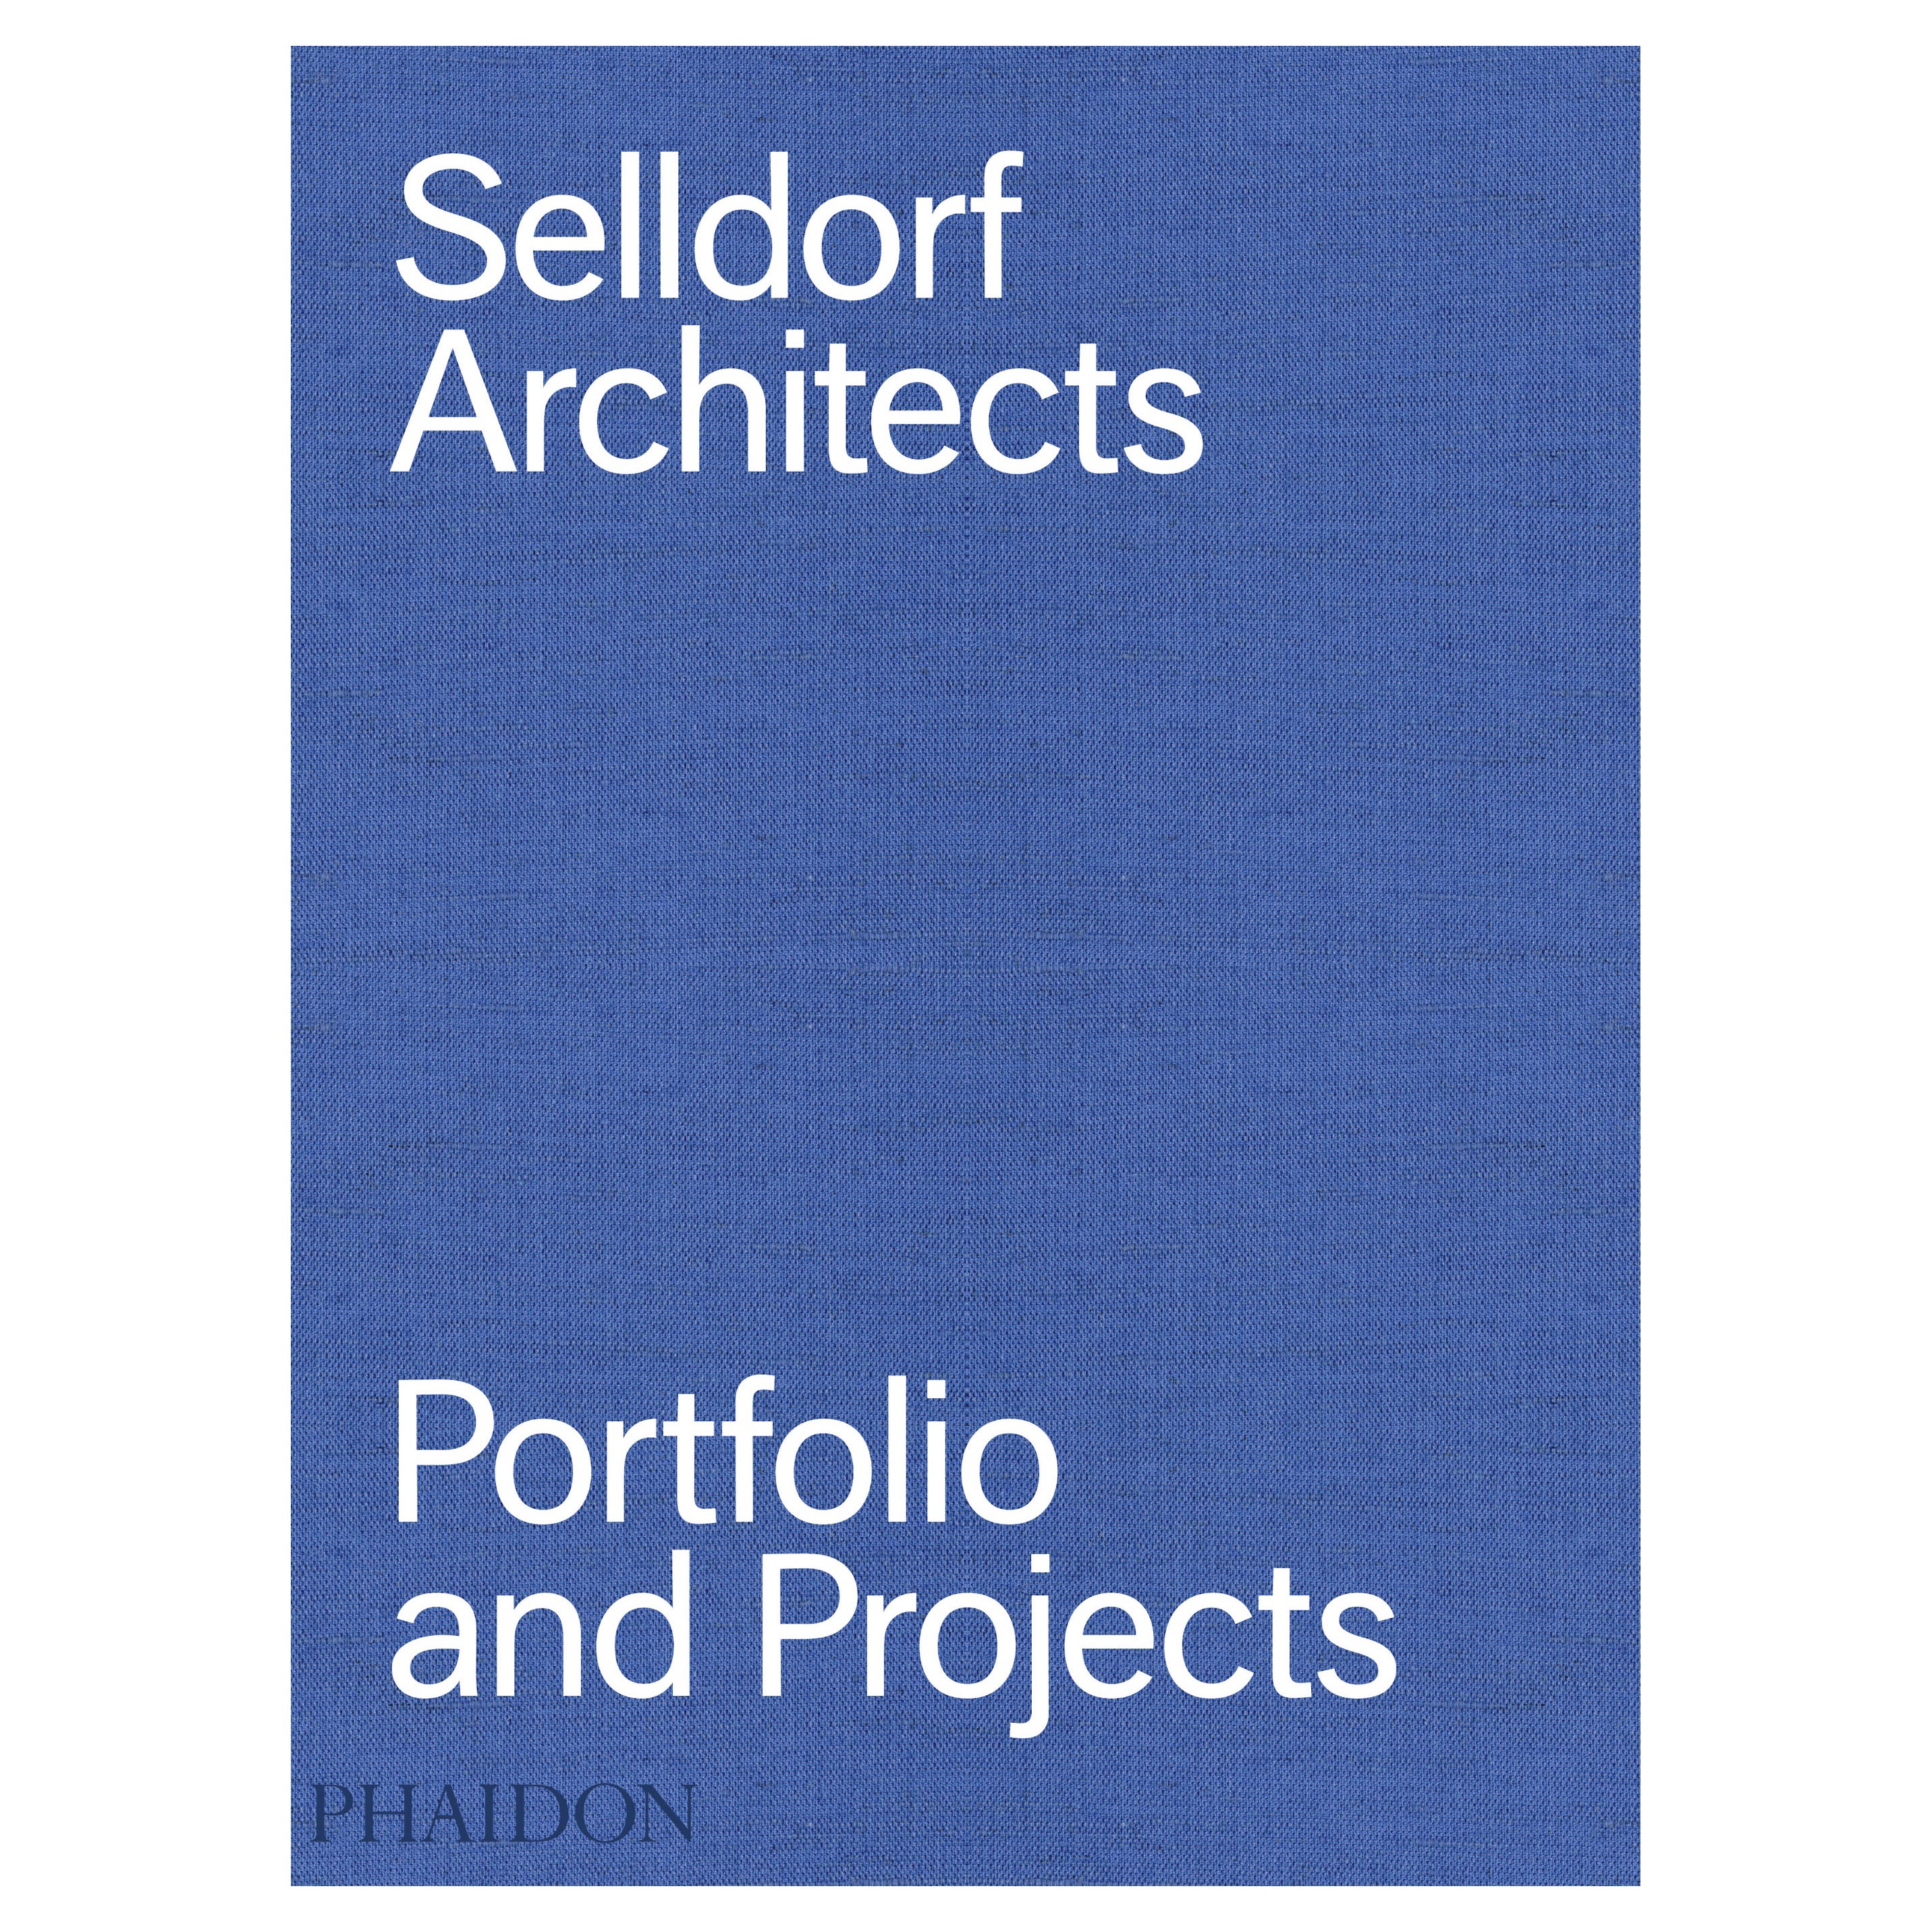 Architektur-, Portfolio und Projekte von Selldorf